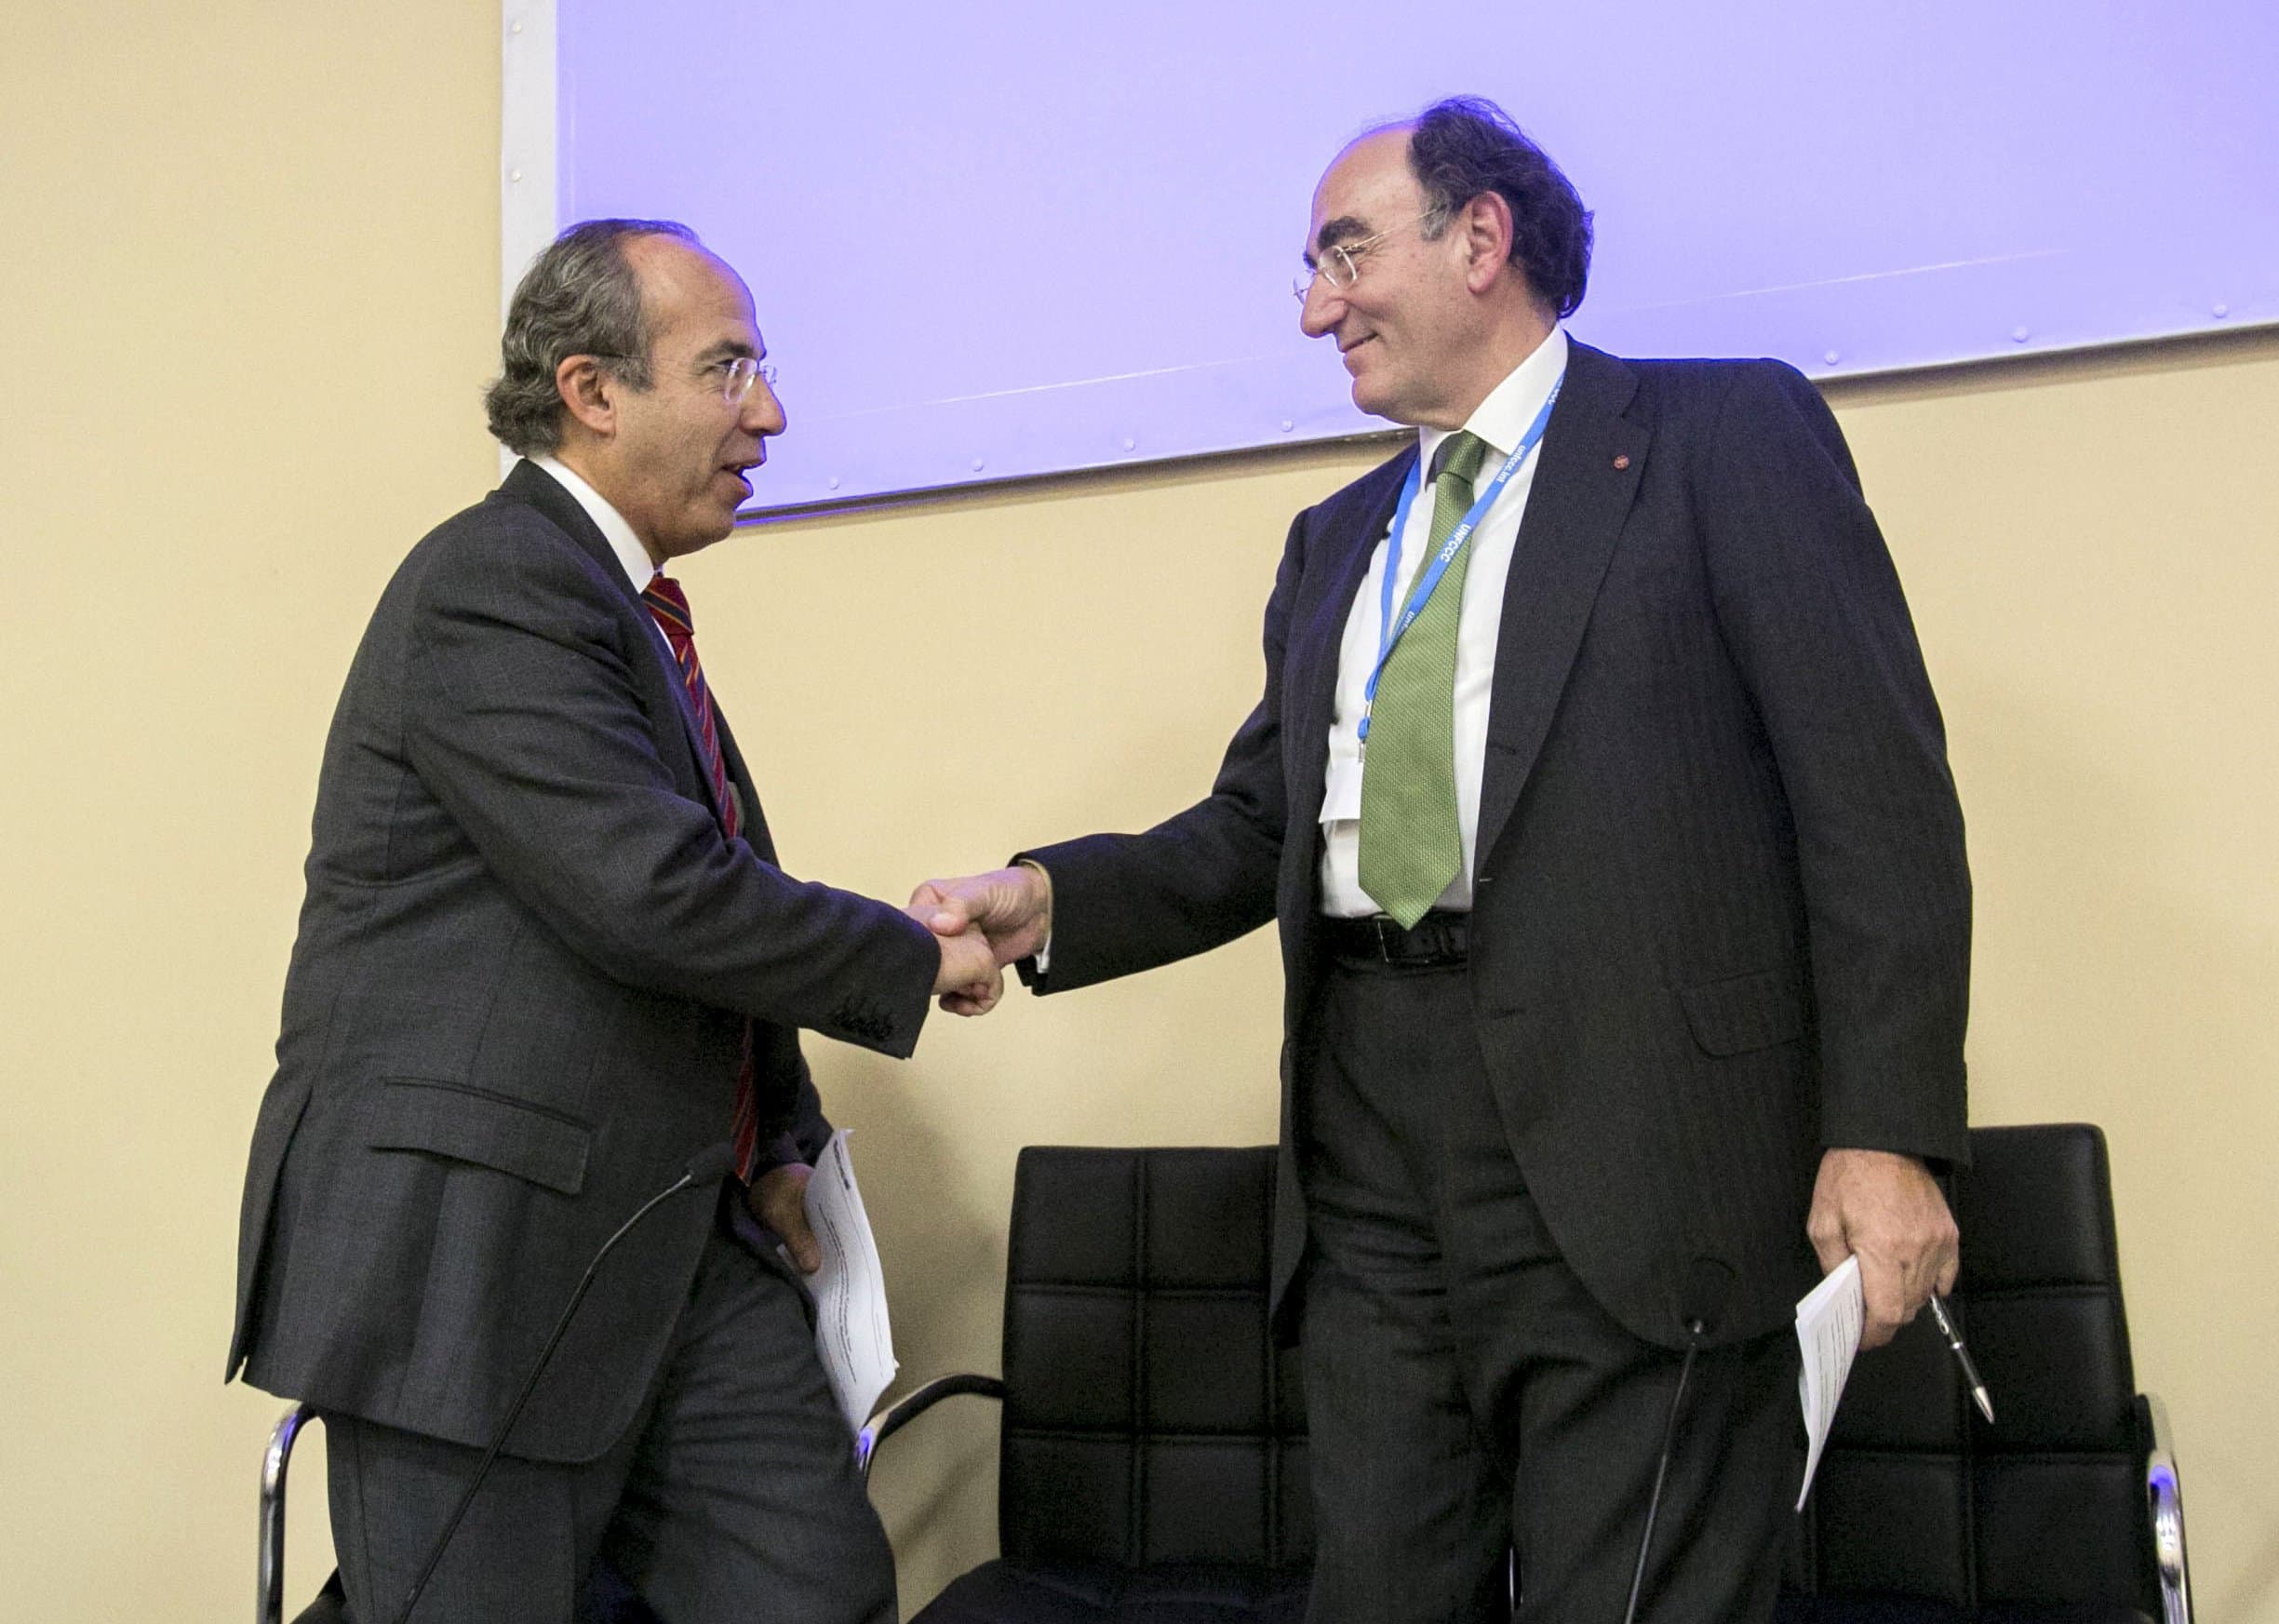 El presidente de Iberdrola, Ignacio Sánchez Galán, saluda al expresidente de México Felipe Calderón en la Cumbre sobre el Cambio Climático, COP21, celebrada en diciembre de 2015 en París. Foto: EFE